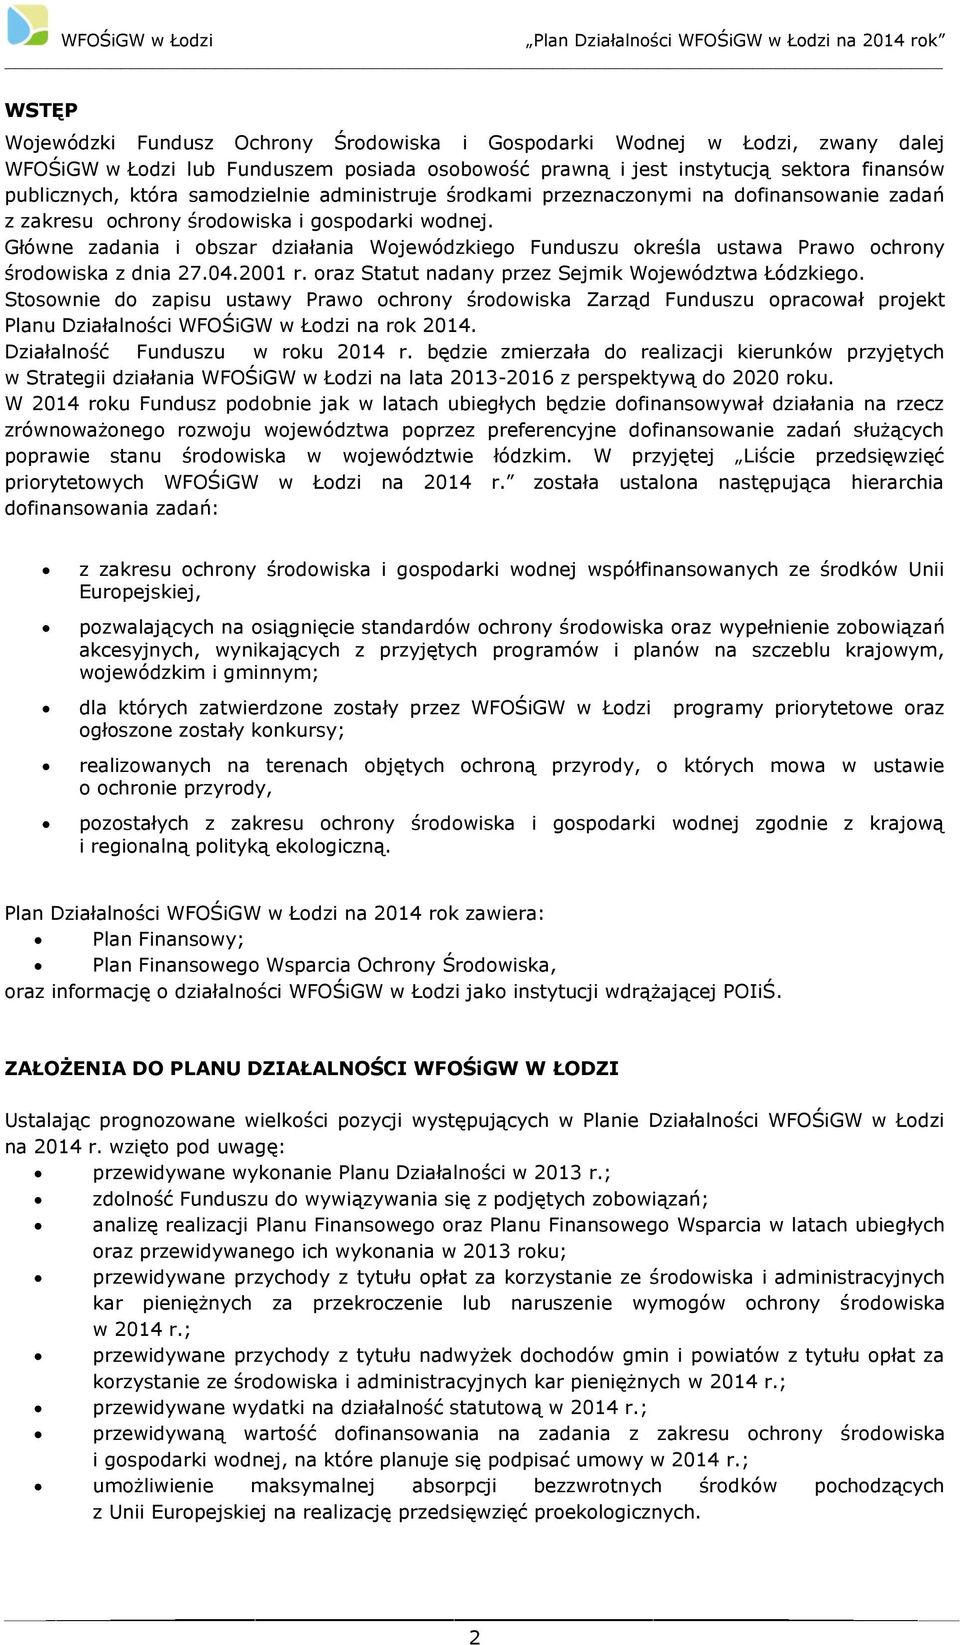 Główne zadania i obszar działania Wojewódzkiego Funduszu określa ustawa Prawo ochrony środowiska z dnia 27.04.2001 r. oraz Statut nadany przez Sejmik Województwa Łódzkiego.